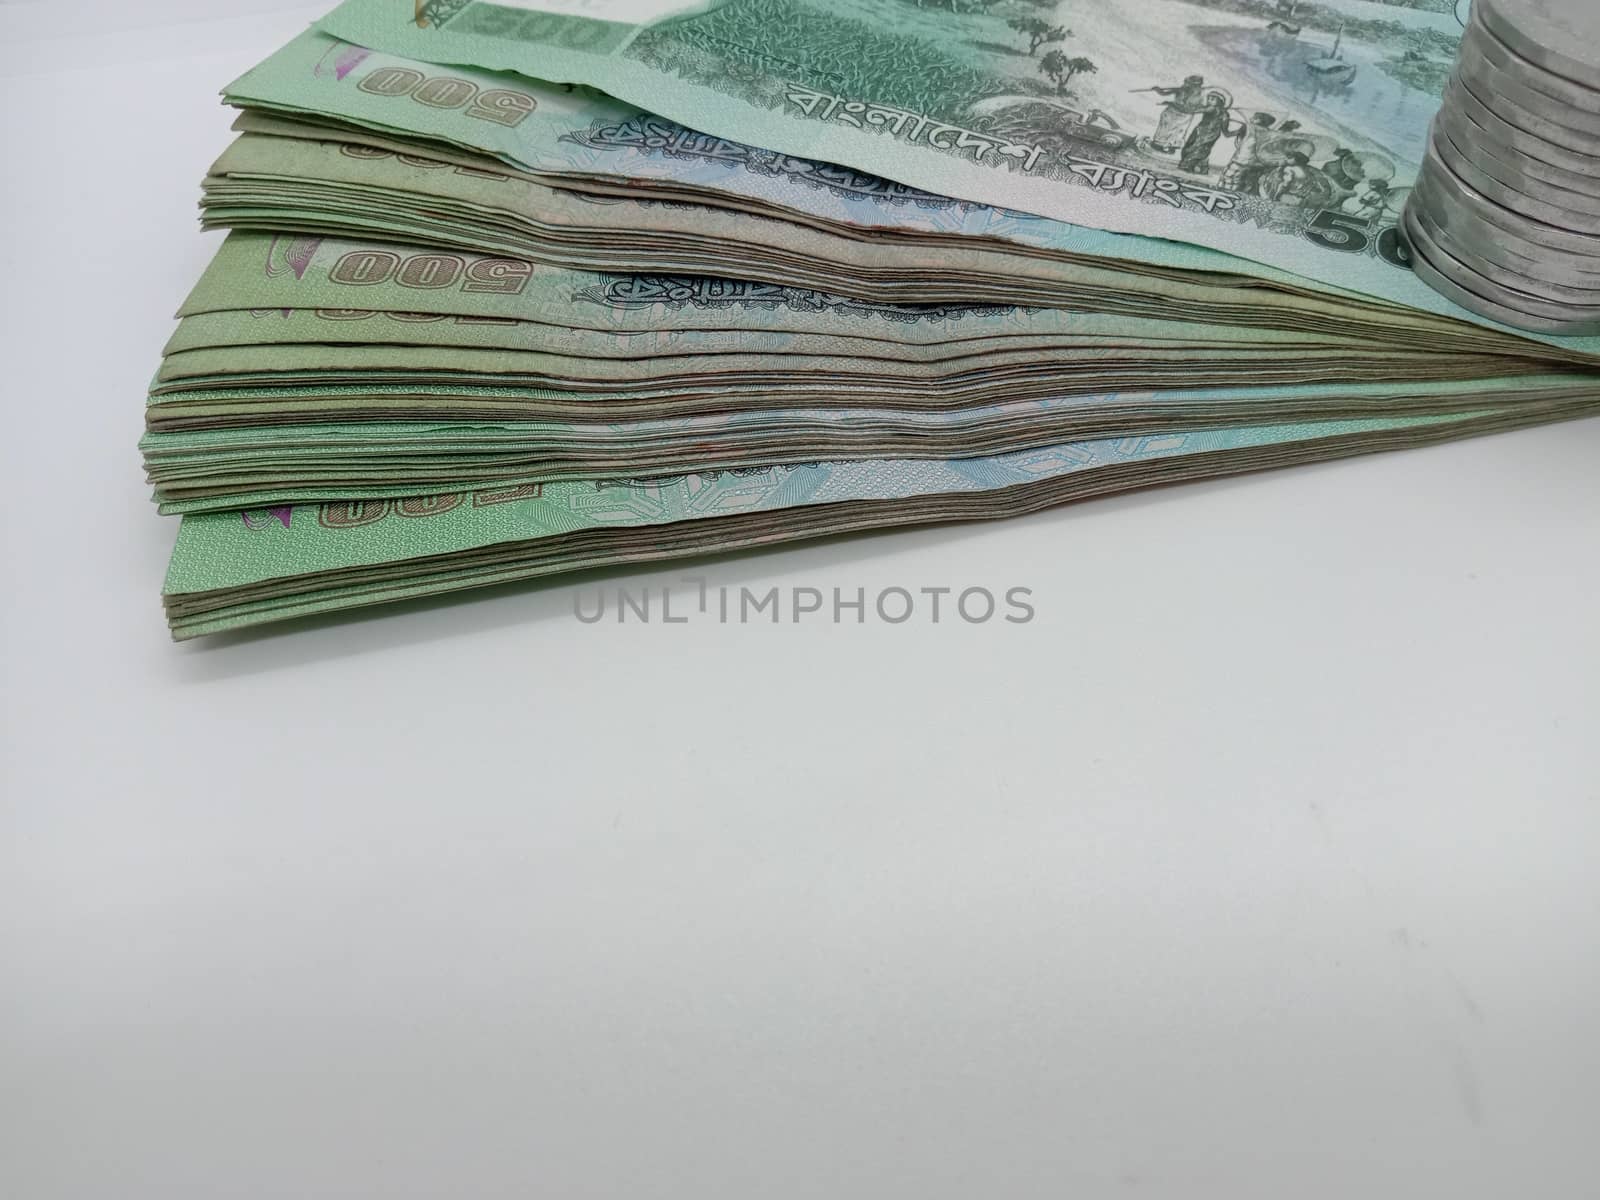 Bangladeshi 500 hundred bank note on white background